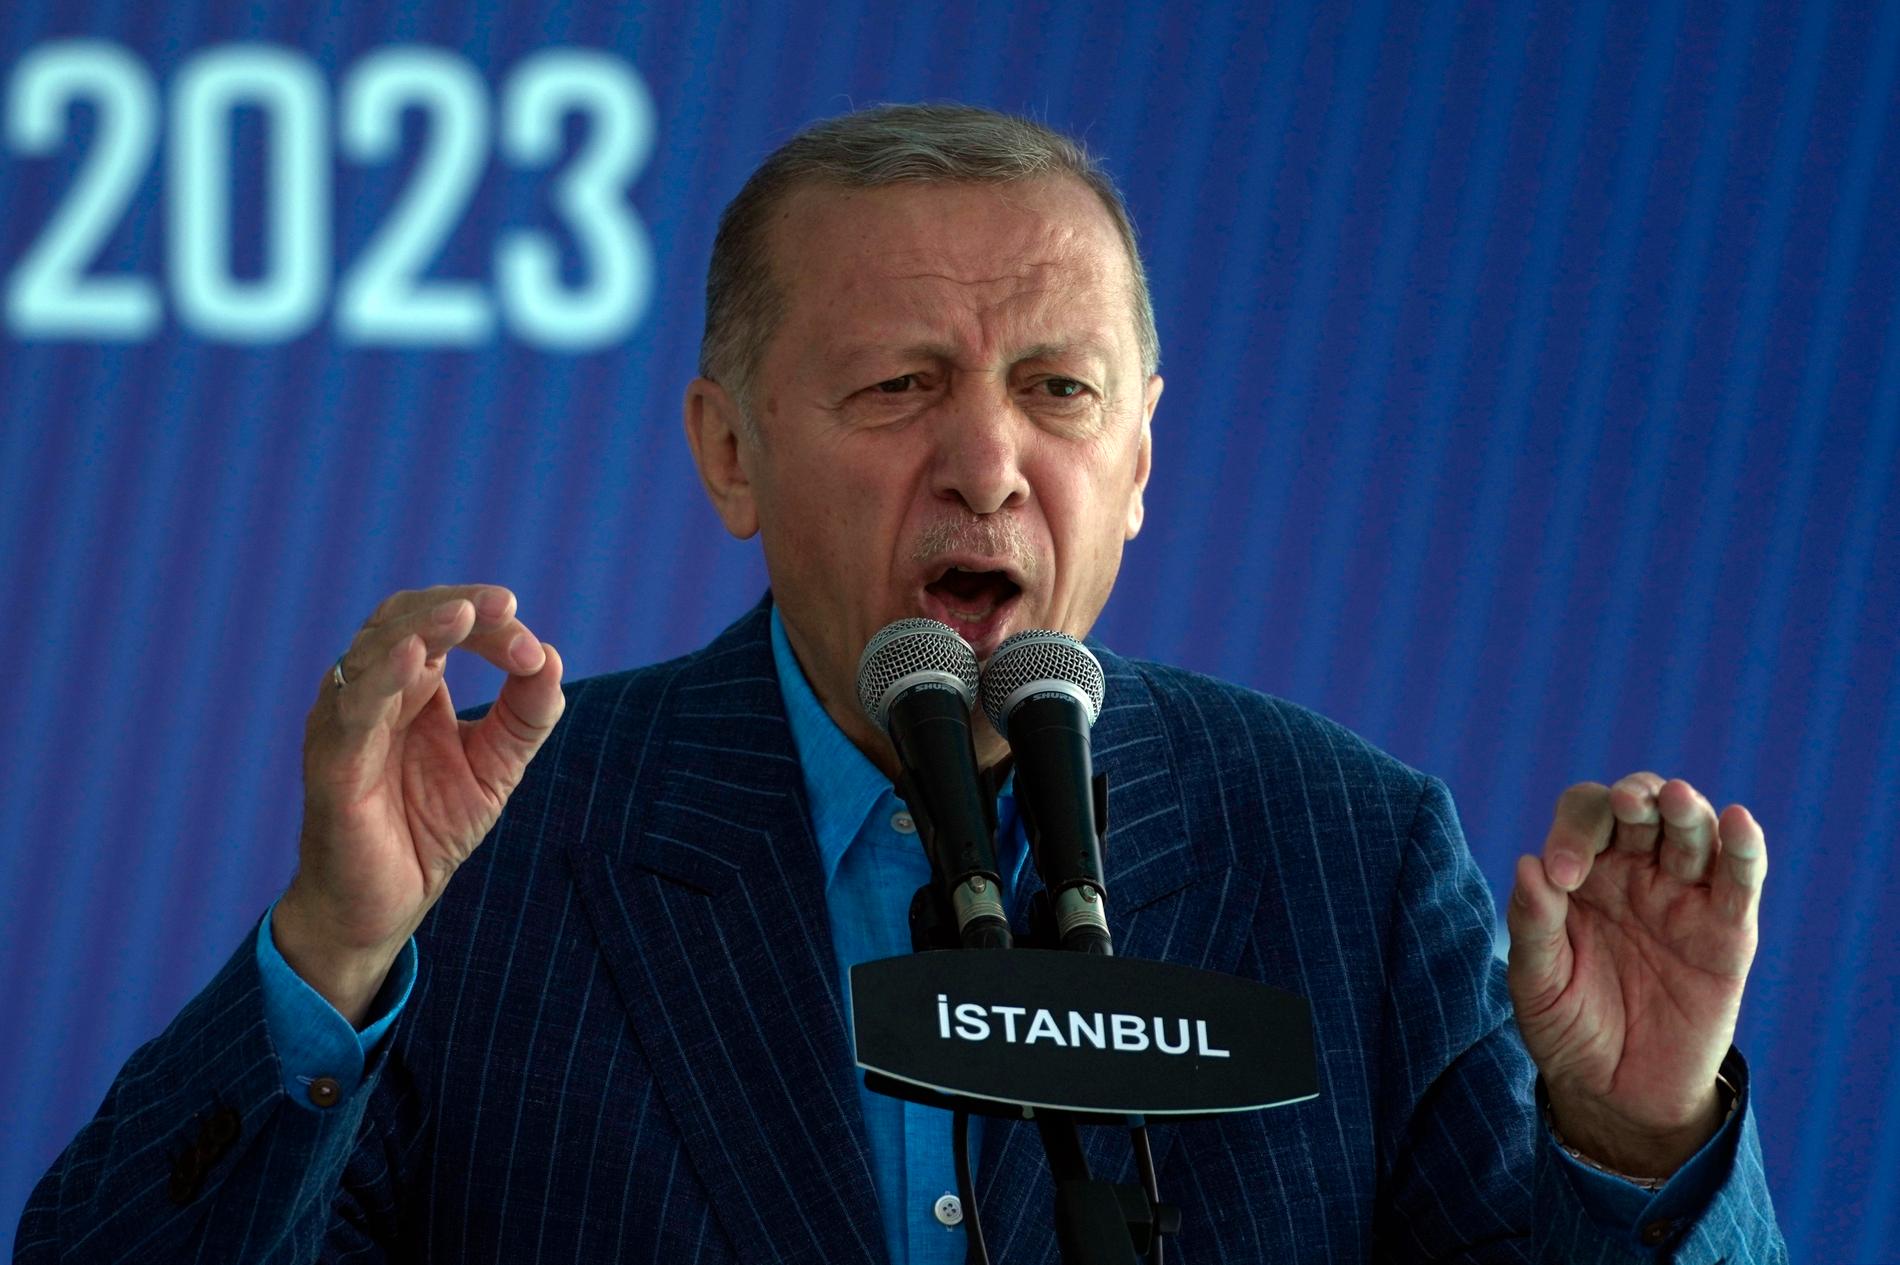 Erdoğan kampanjtalar den 27 maj, dagen före den sista valomgången. 